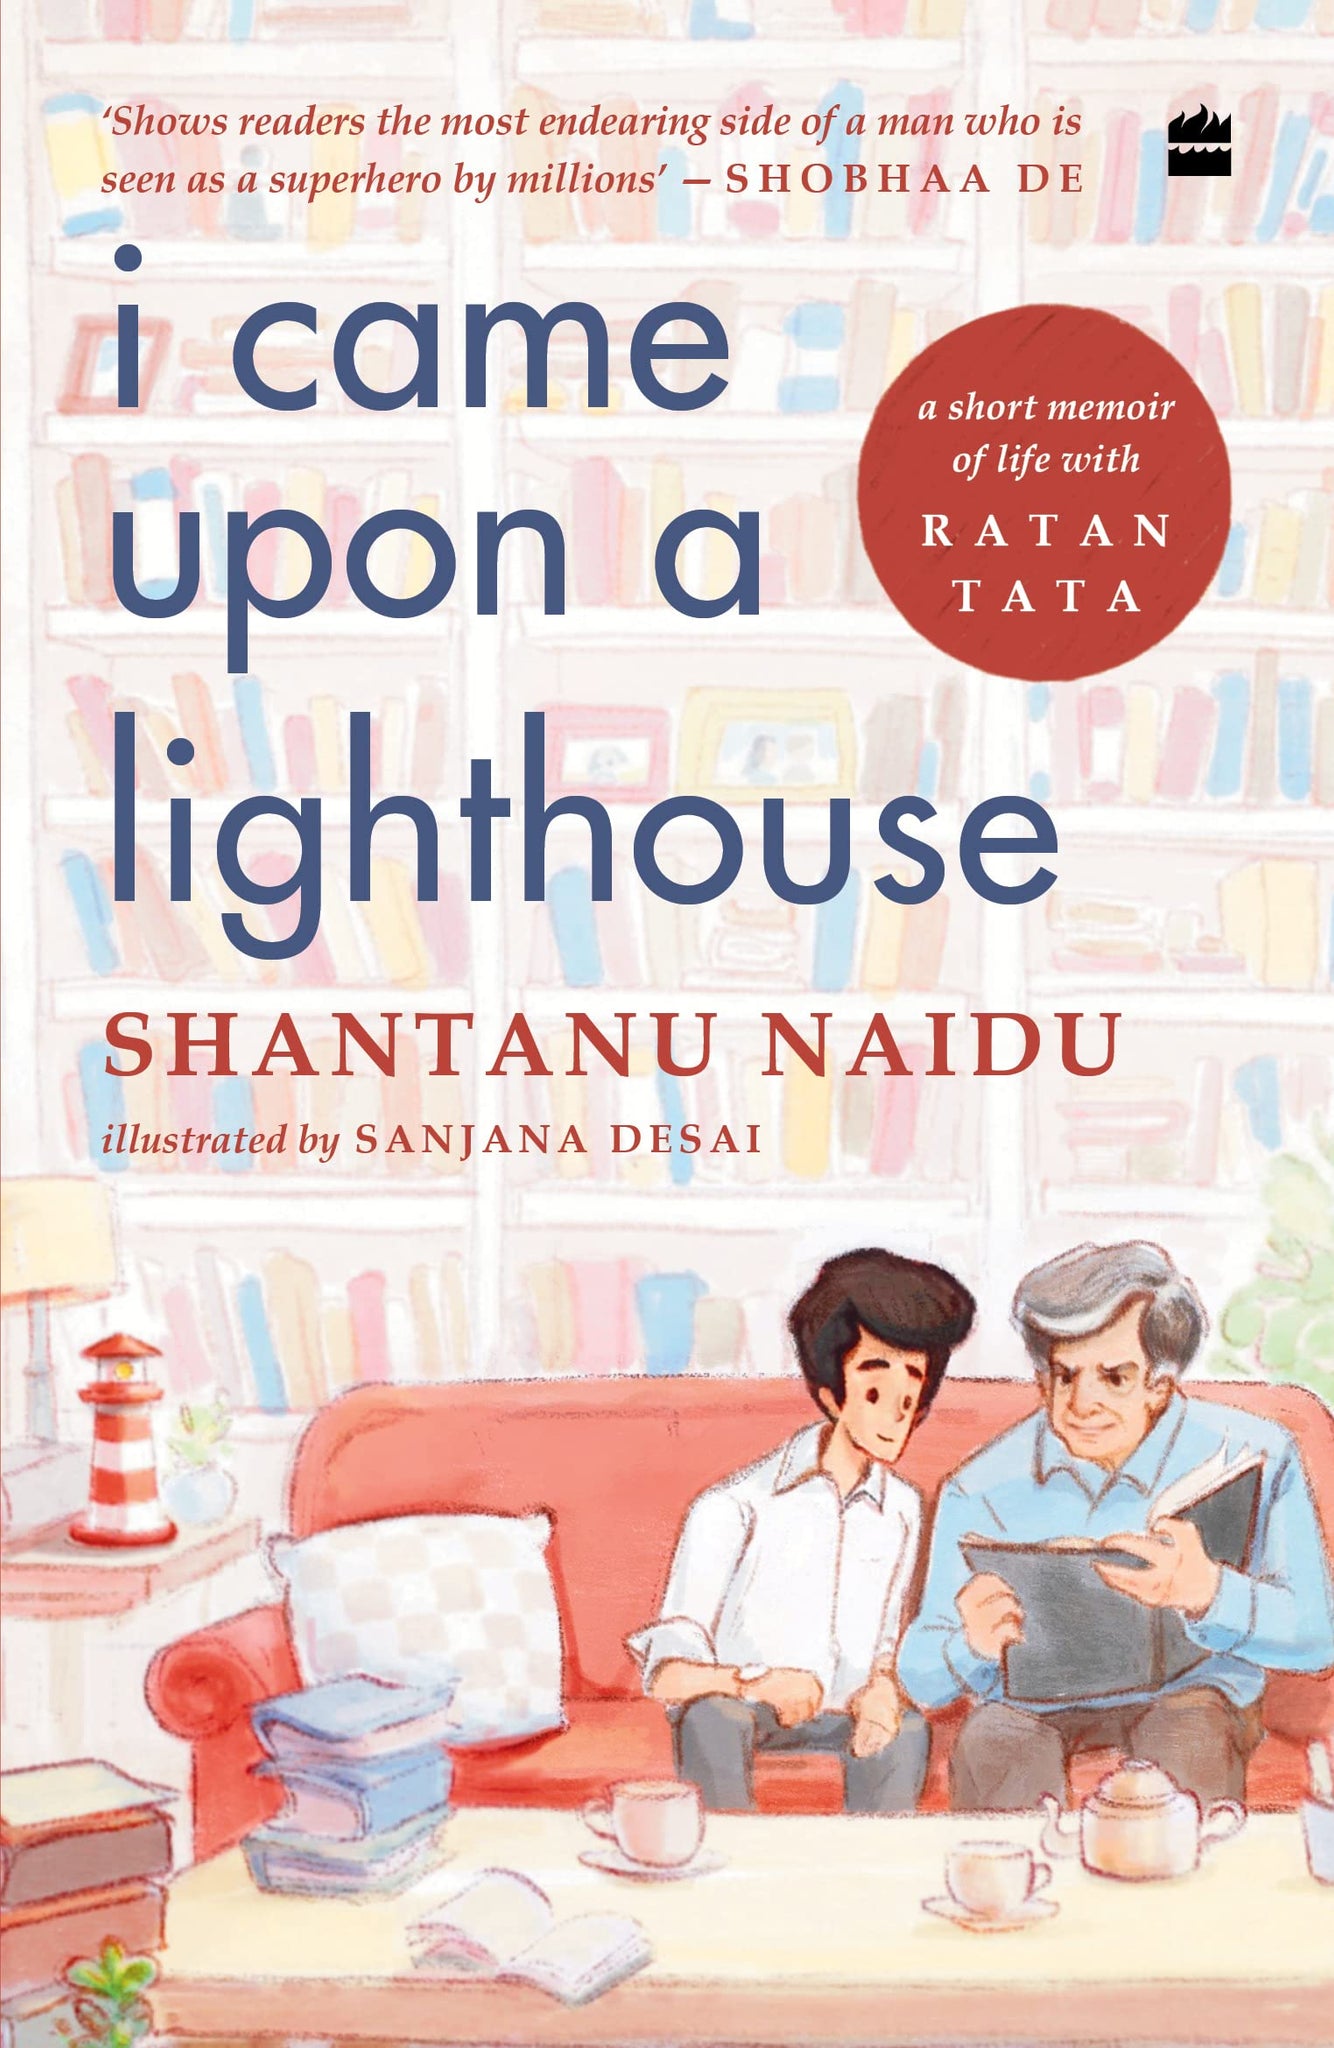 I Came Upon A Lighthouse: A Short Memoir Of Life With Ratan Tata